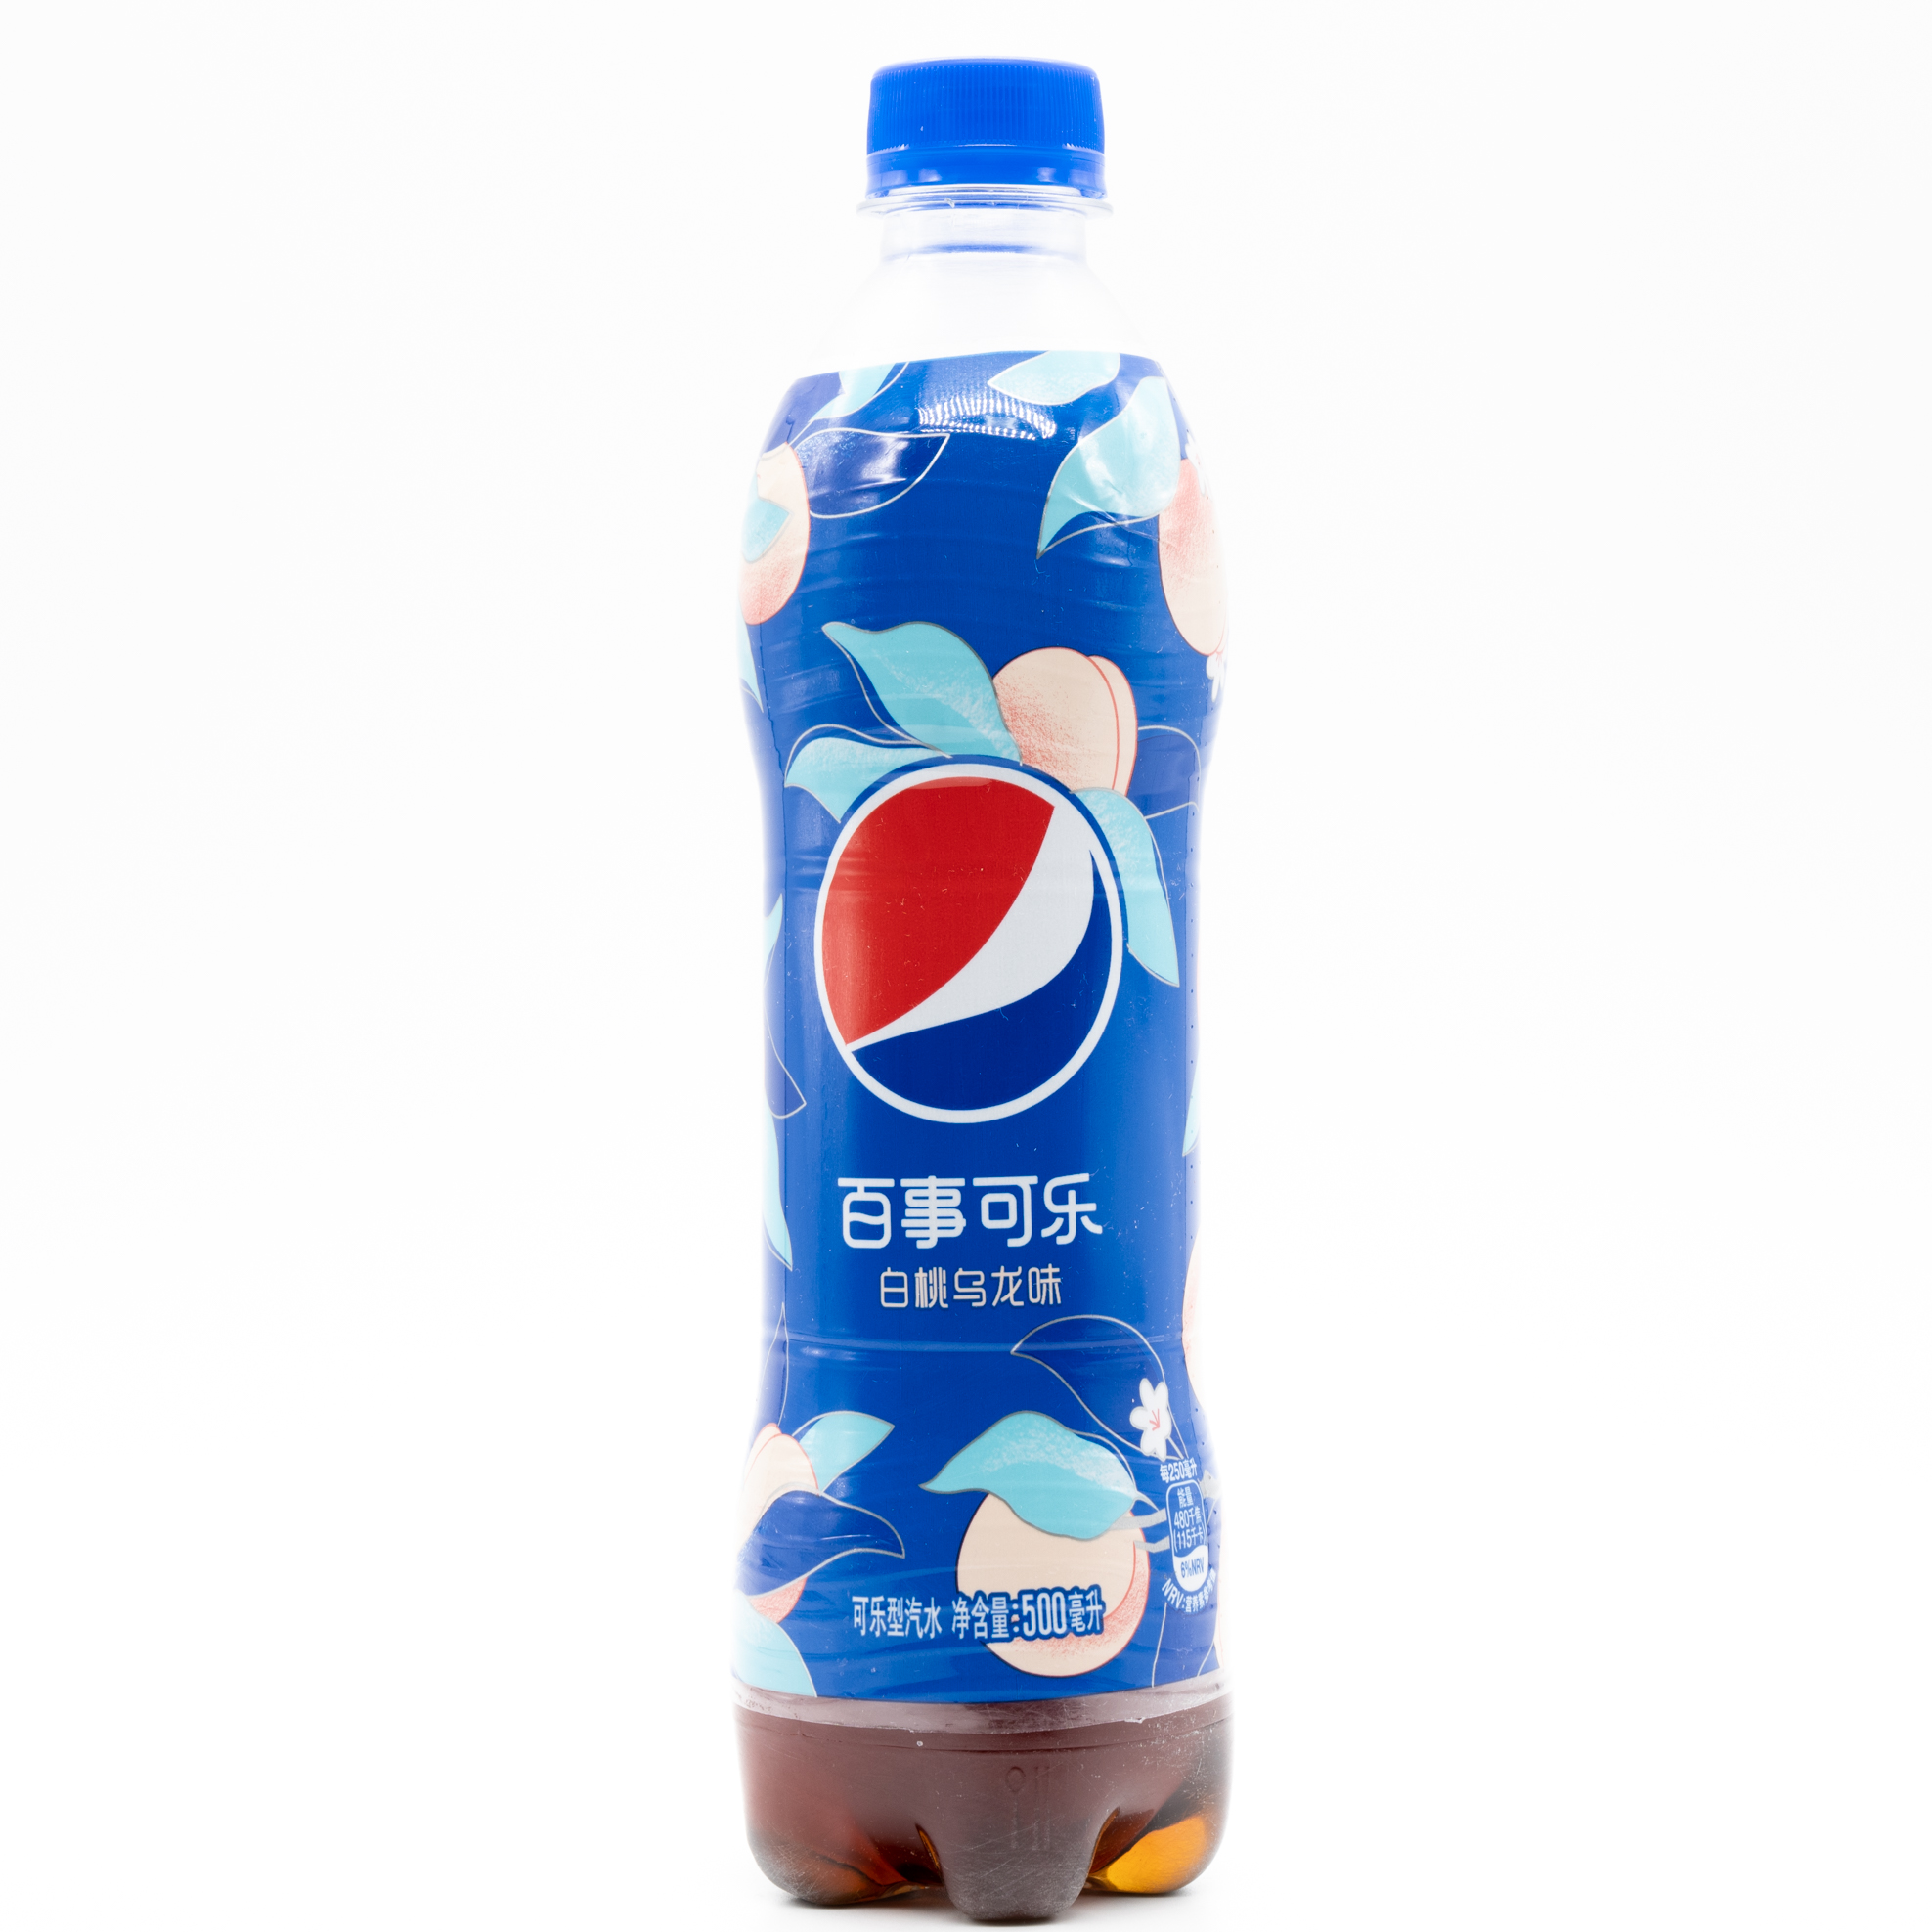 空水りょーすけ コーラのハブ空港 Pepsi Peach Oolong Tea China です 中国ペプシコは昨年より 太汽系列 と呼ばれるシリーズを展開 キンモクセイフレーバーに続き今回第二弾として 白桃烏龍茶味 を発売しました 桃とお茶の上品な味わいが